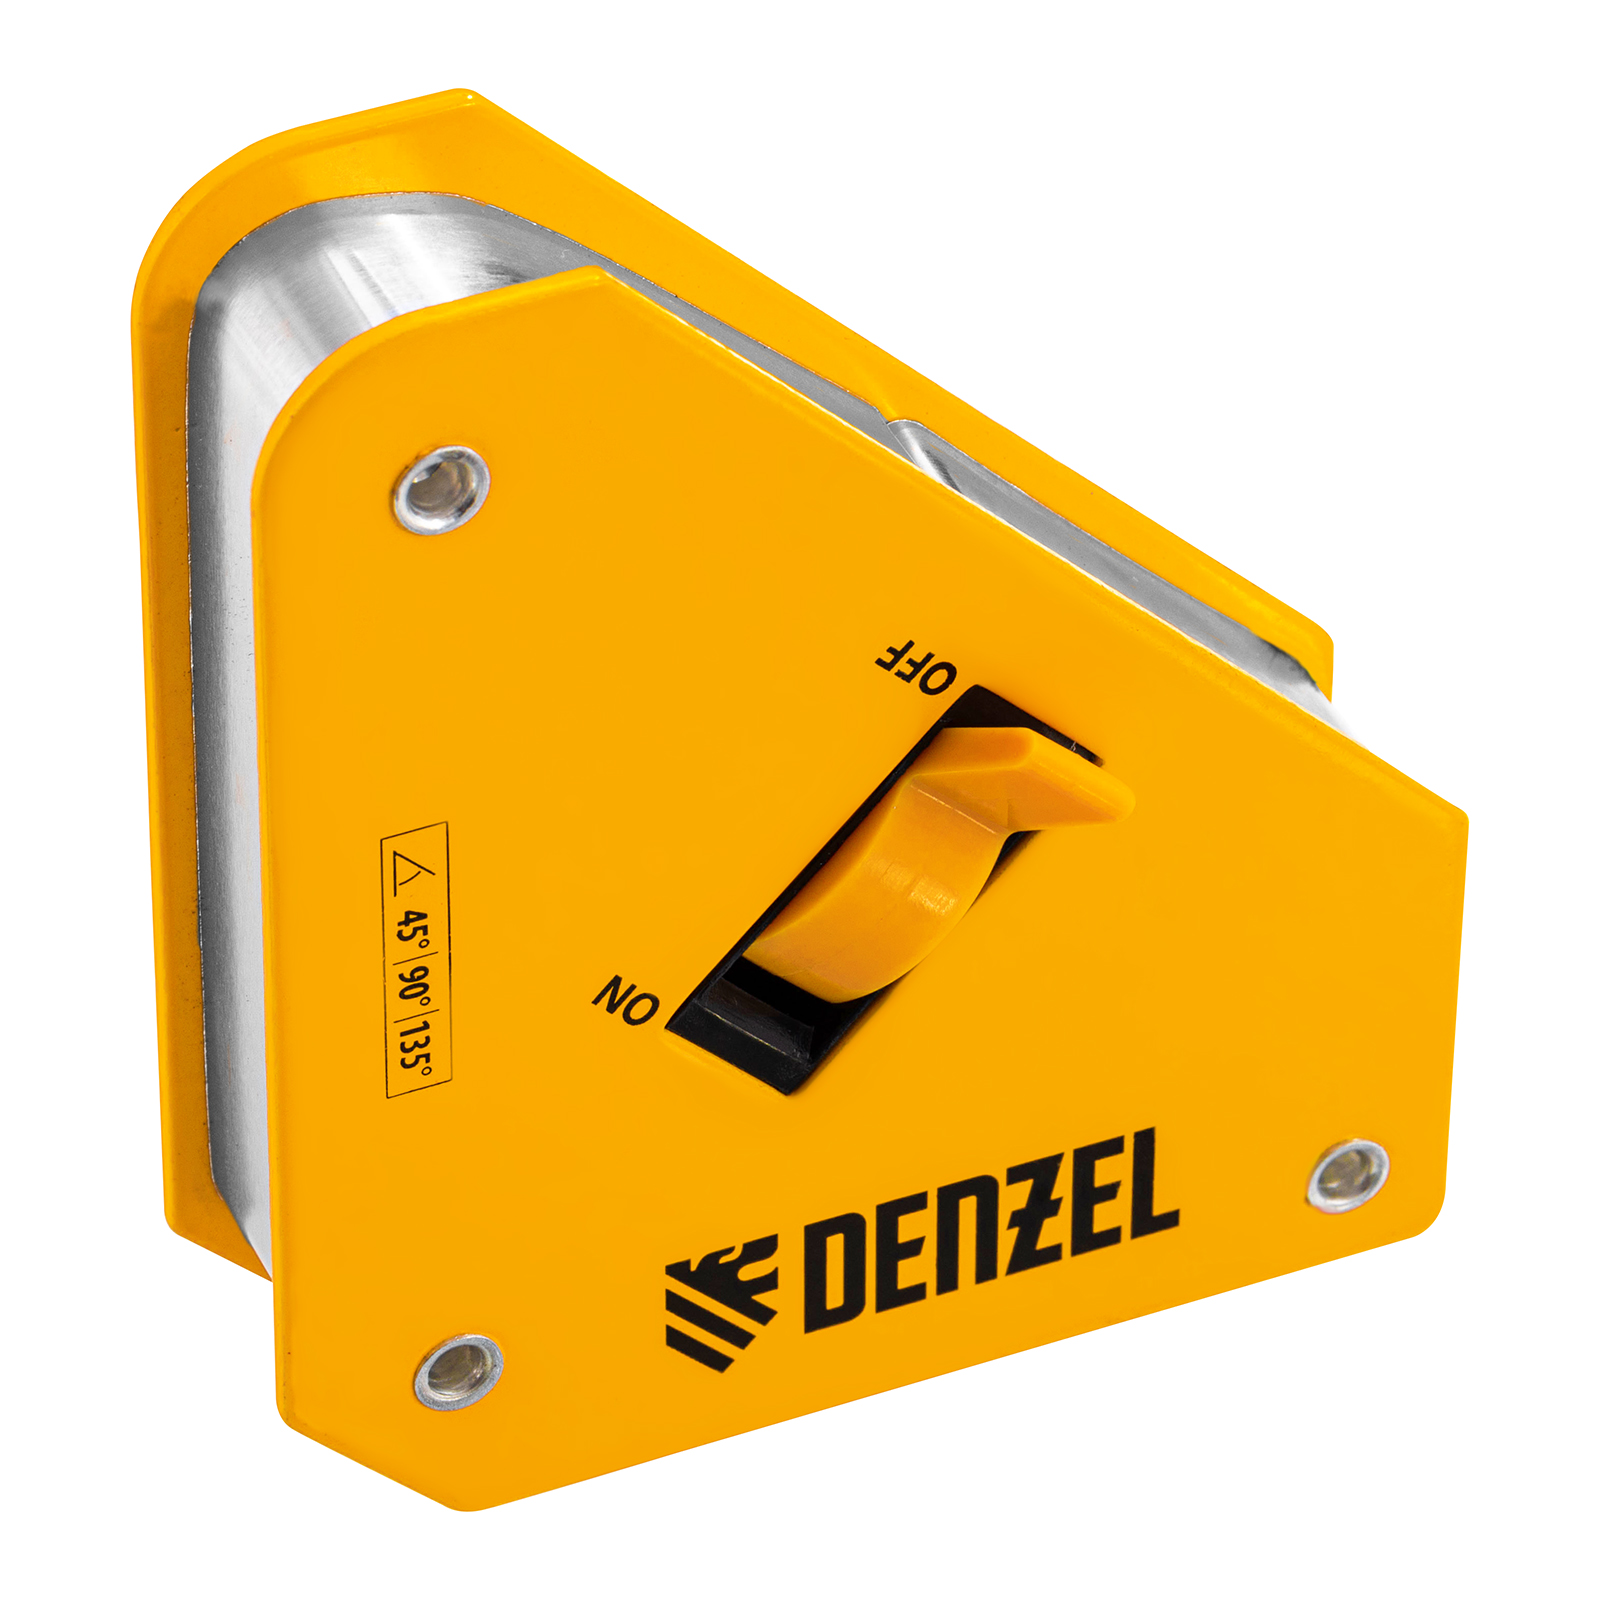 Фиксатор магнитный отключаемый для сварочных работ DENZEL усилие 30 LB, 45х90 град. 97561 фиксатор магнитный для сварочных работ beorol